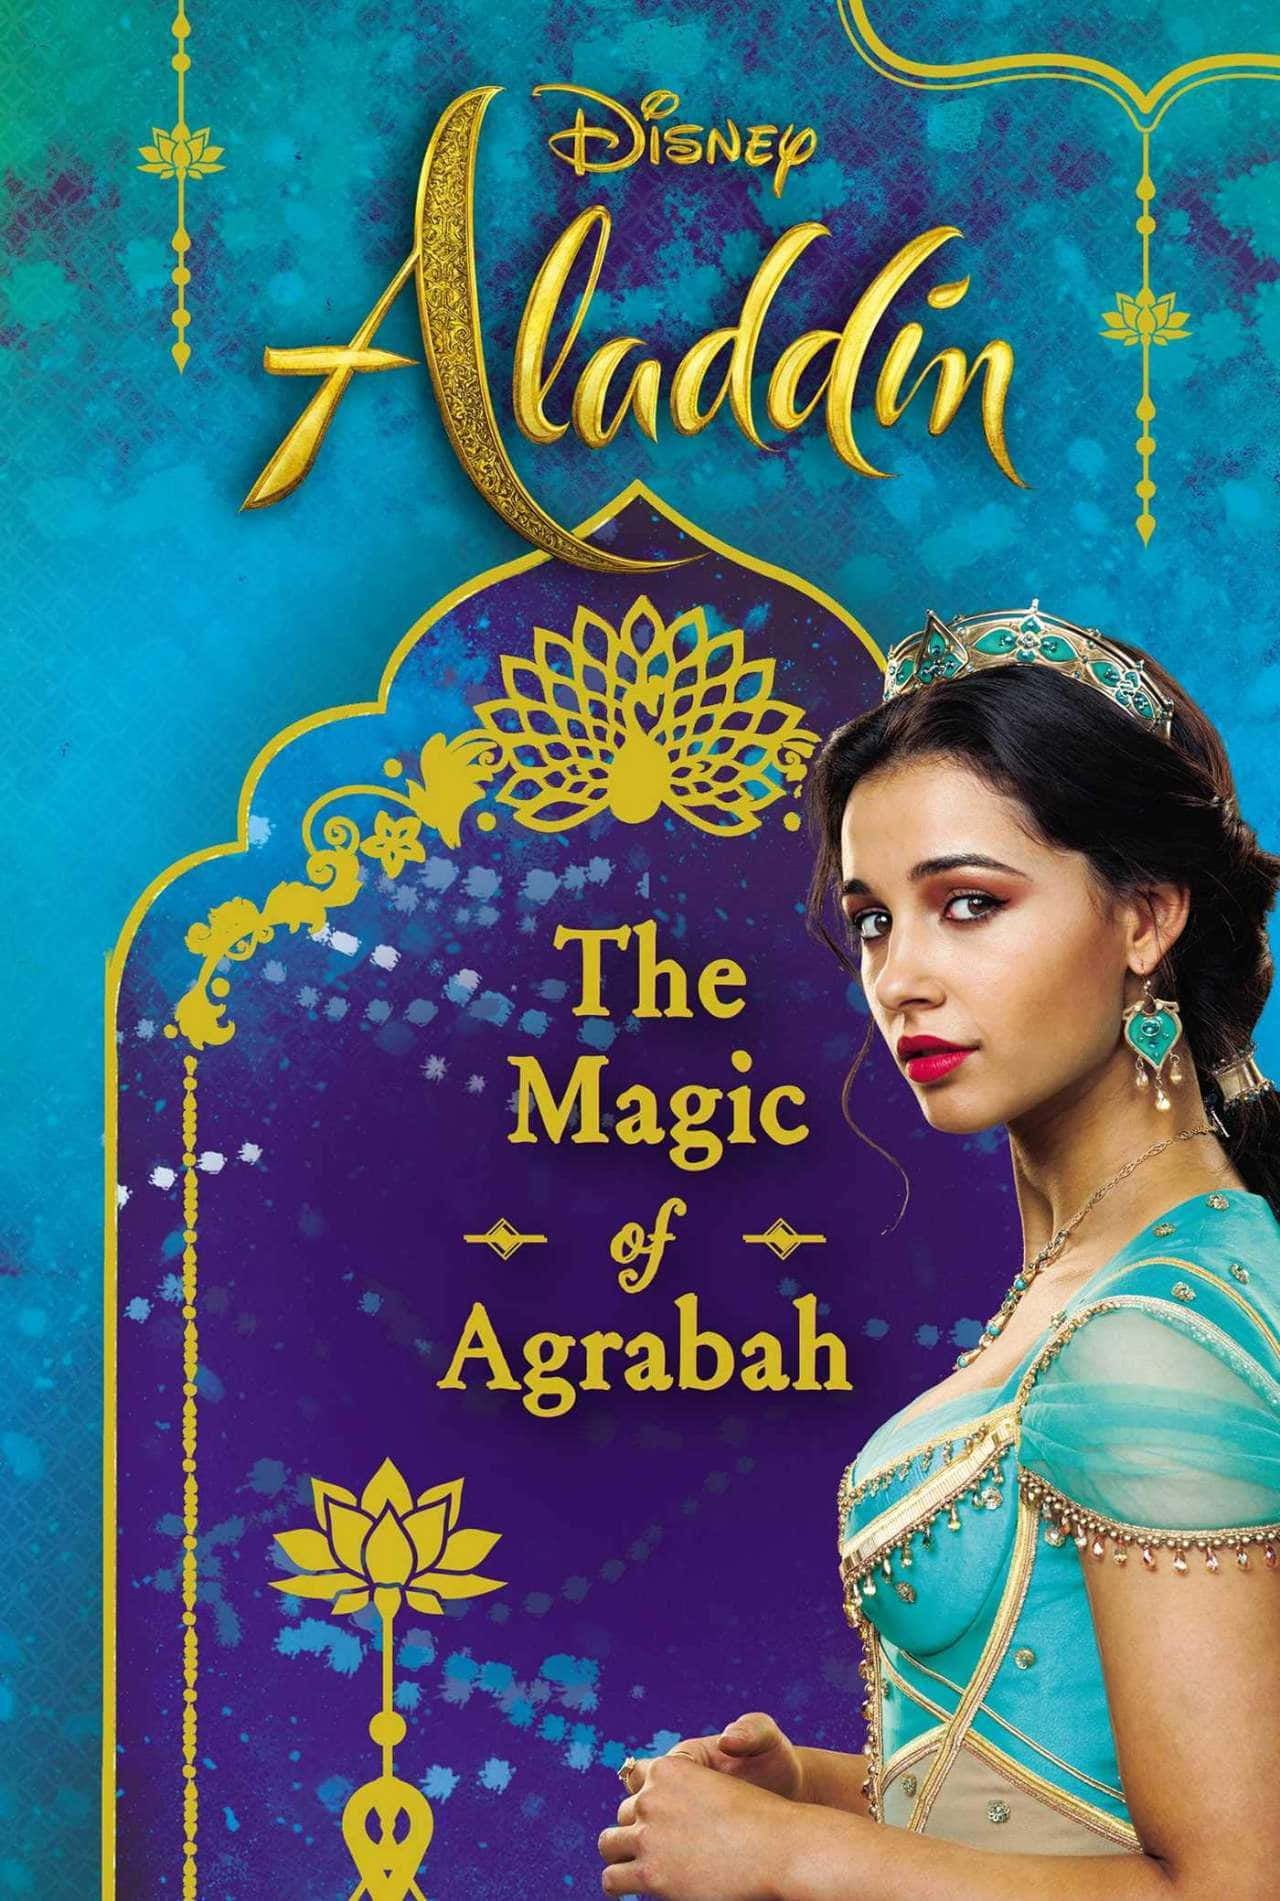 Loslegendarios Y Amados Personajes Aladdin Y La Princesa Jasmine Disfrutando De Una Mágica Noche Donde Se Cumplen Todos Sus Deseos.